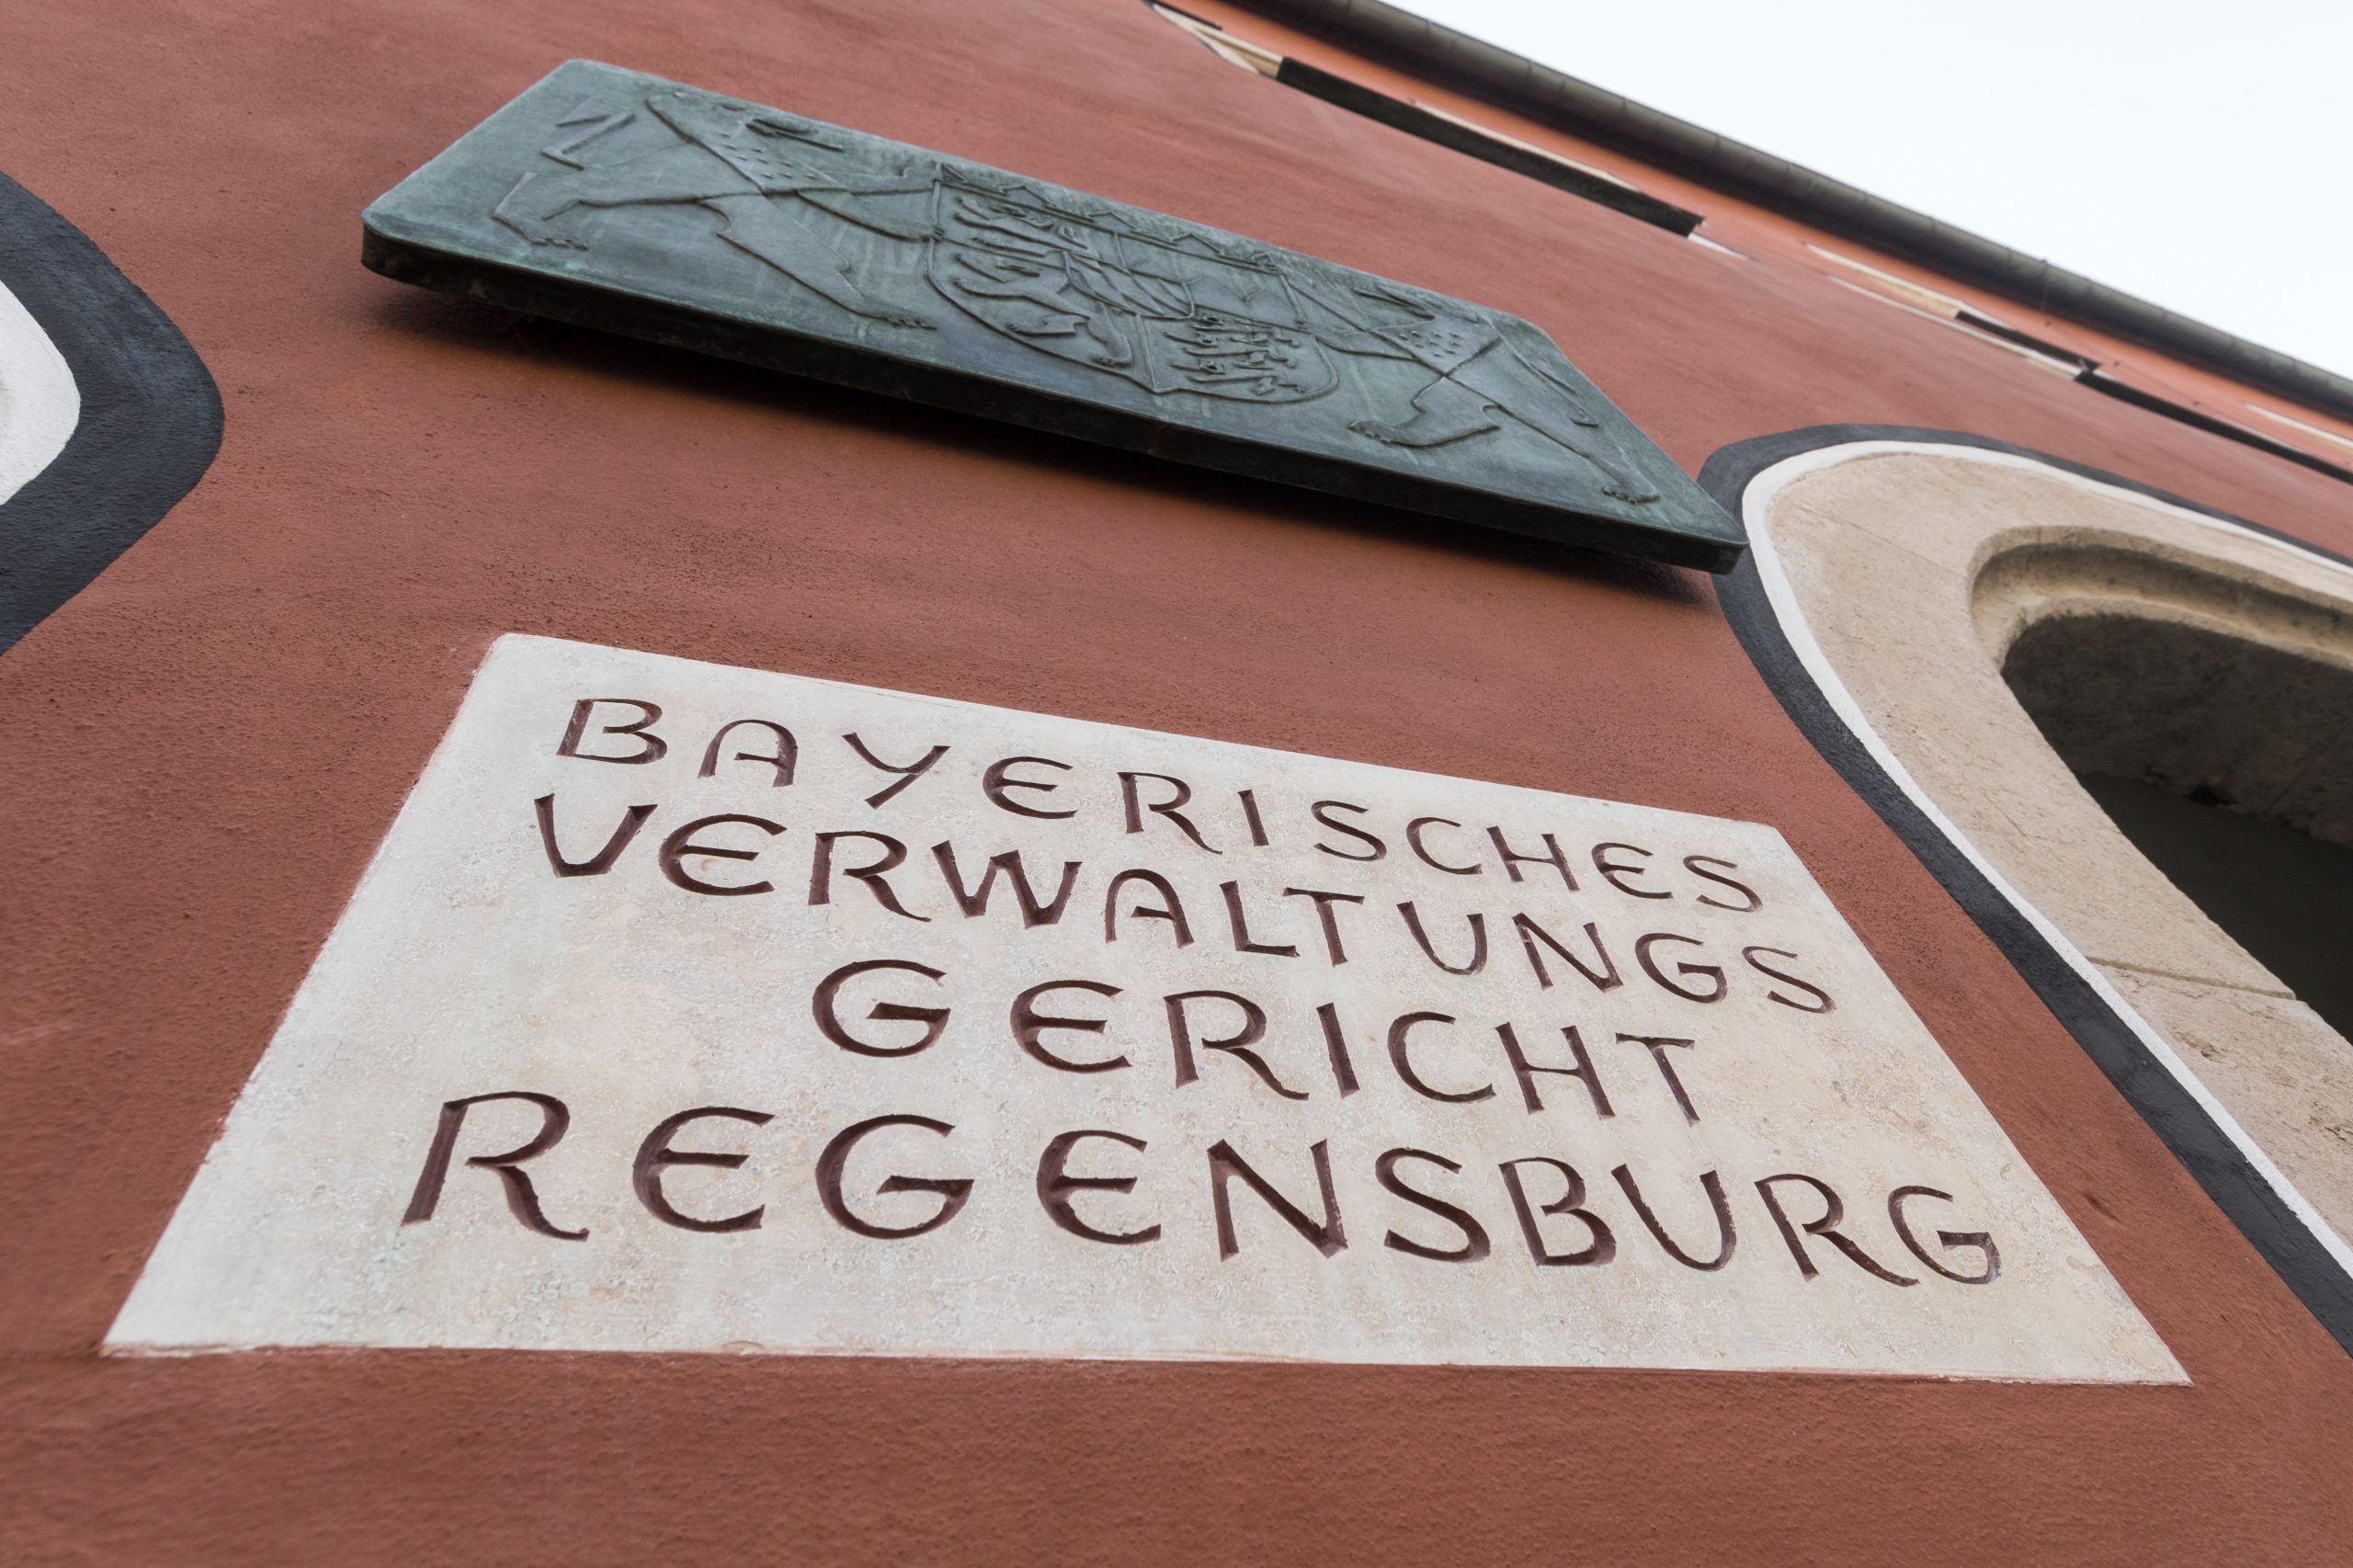 Verwaltungsgericht Regensburg